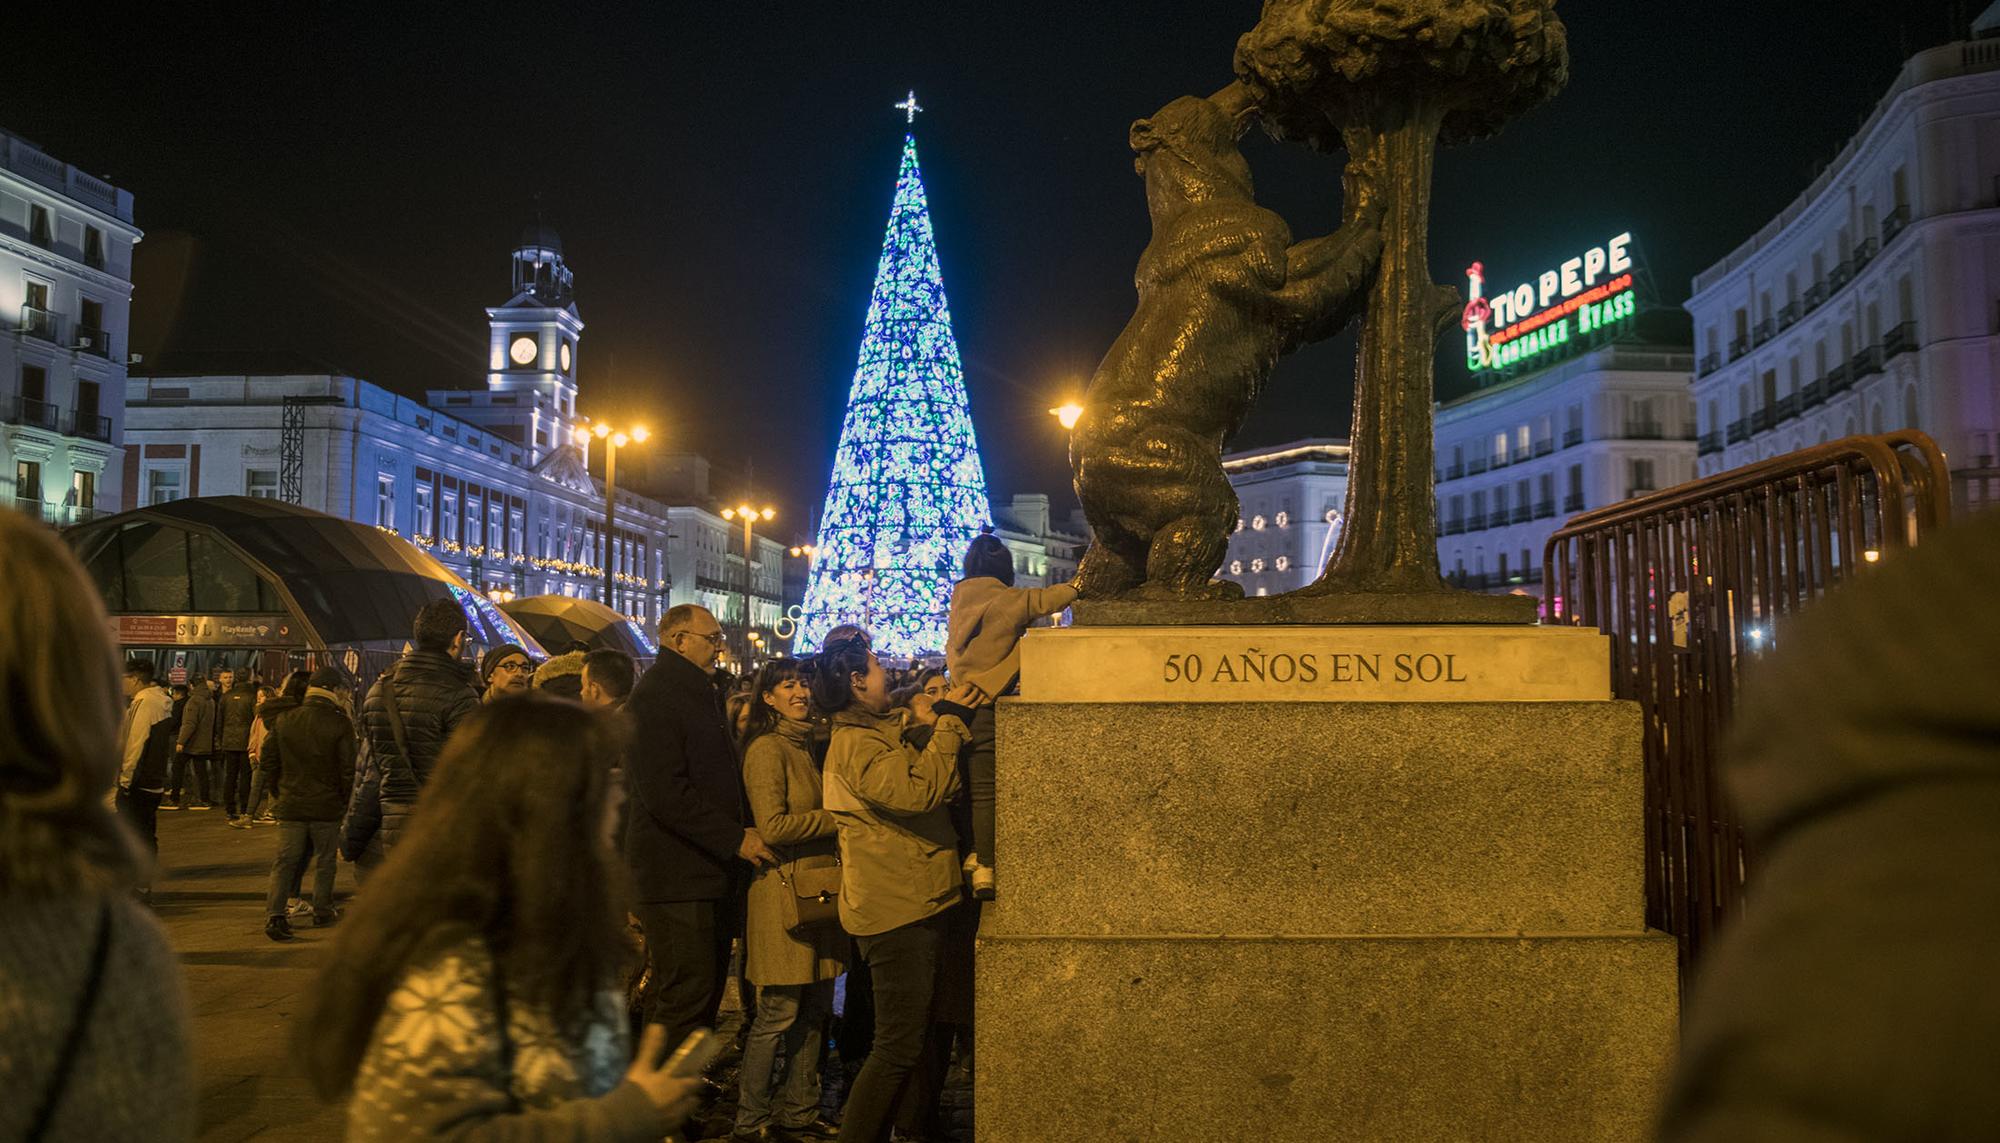 Luces de Navidad en Madrid 2019 - 5